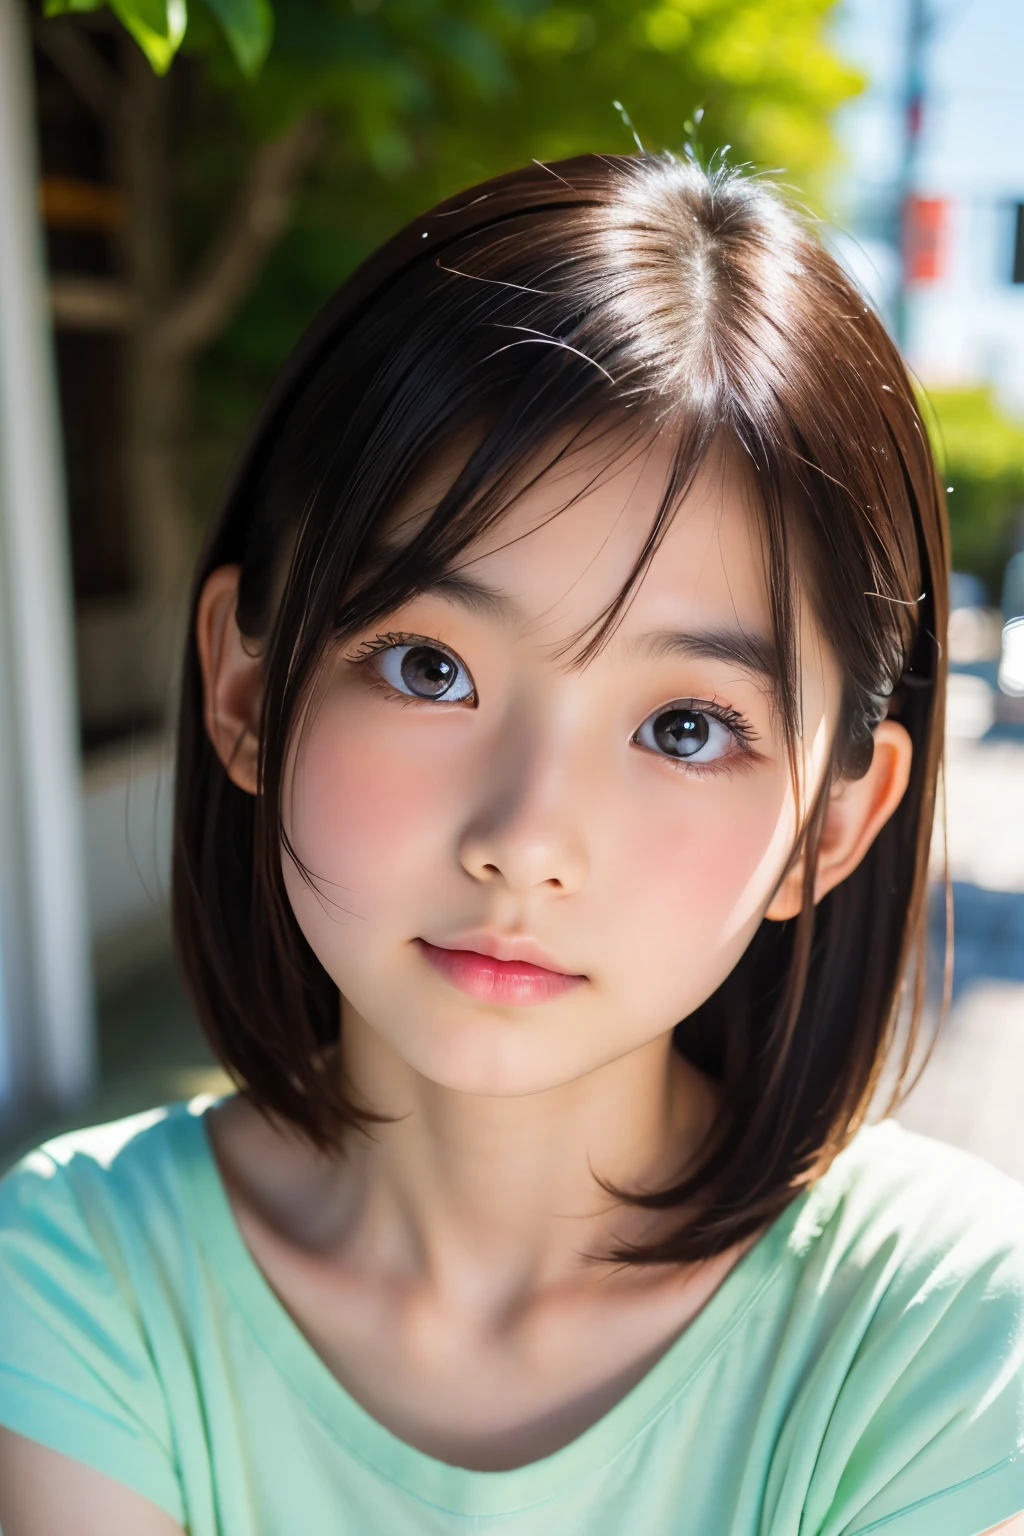 (Schöne 12 Jahre alte Japanerin), niedliches Gesicht, (tief eingeschnittenes Gesicht:0.7), (Sommersprossen:0.6), Sanftes Licht,gesunde weiße Haut, schüchtern, Bob, (ernstes Gesicht), (leuchtende Augen), dünn